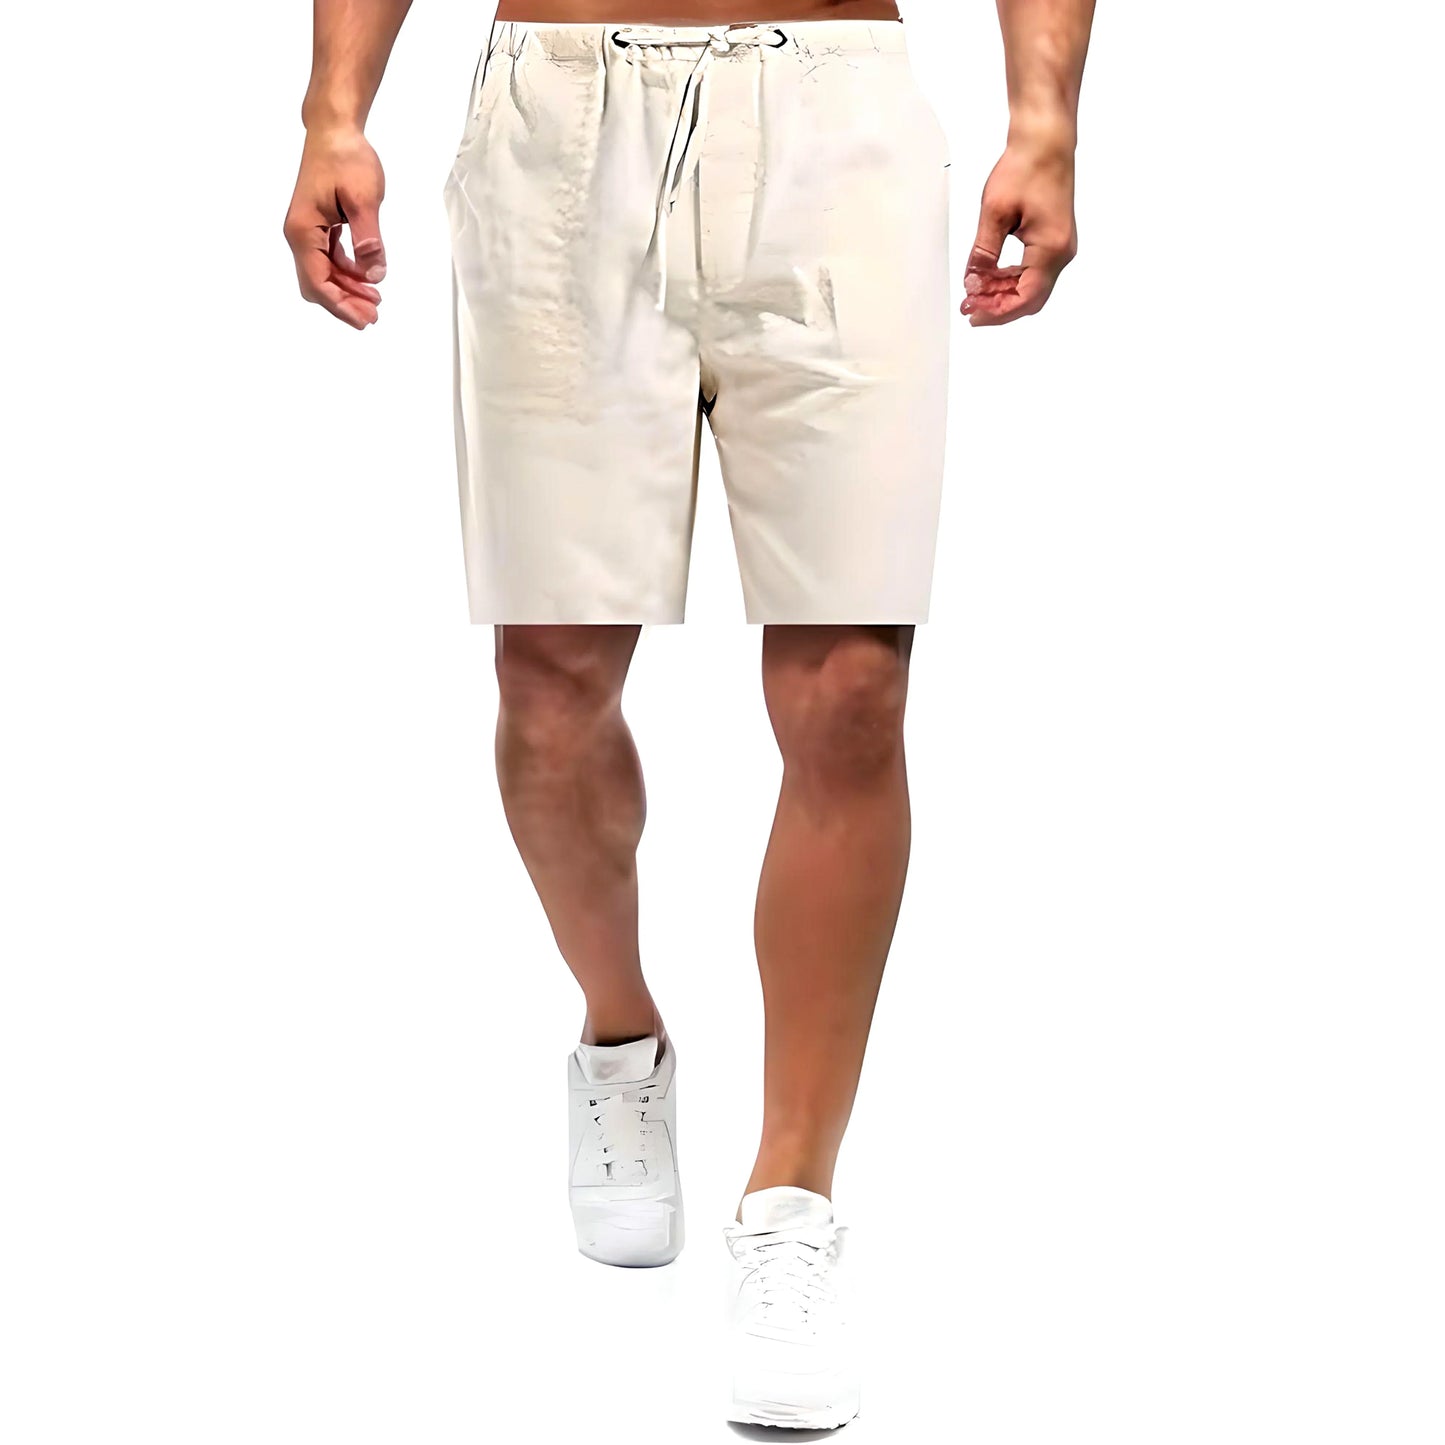 Charles | Casual Linen Shorts - Khaki / M - AMVIM